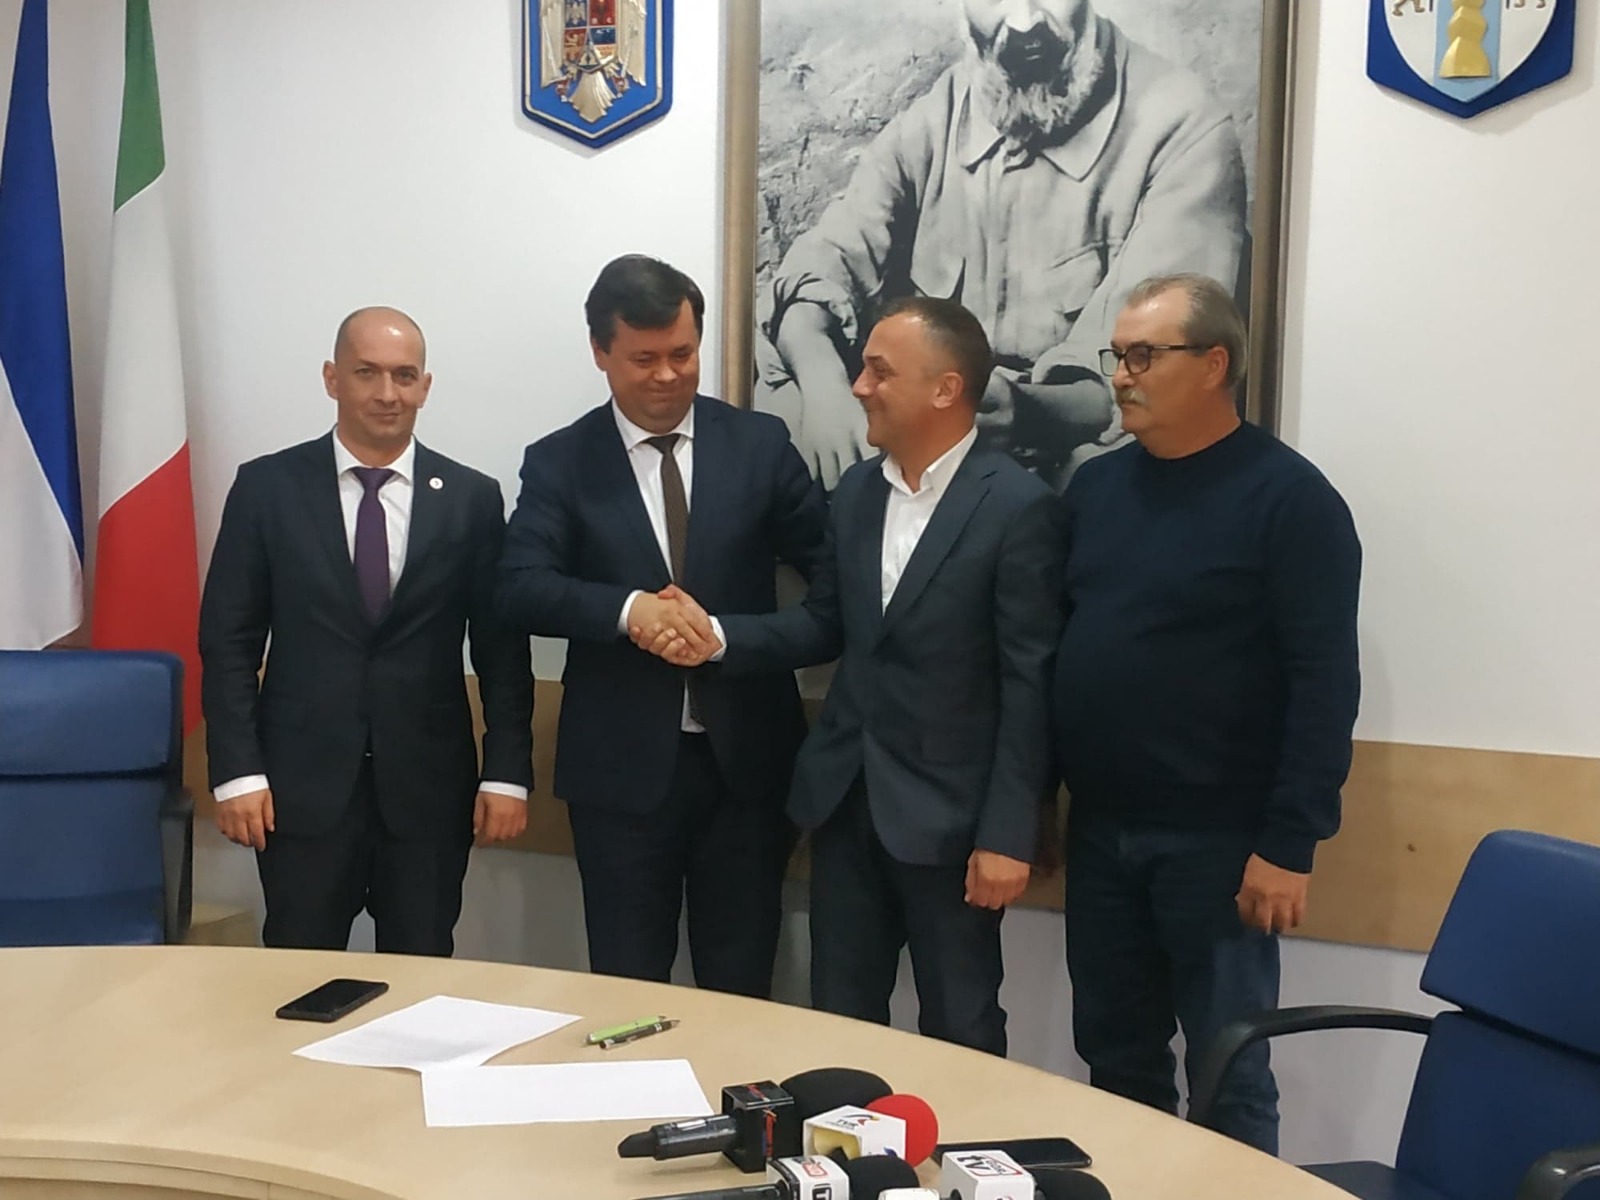 S-a semnat contractul pentru înființarea Centrului Infotrafic Târgu Jiu